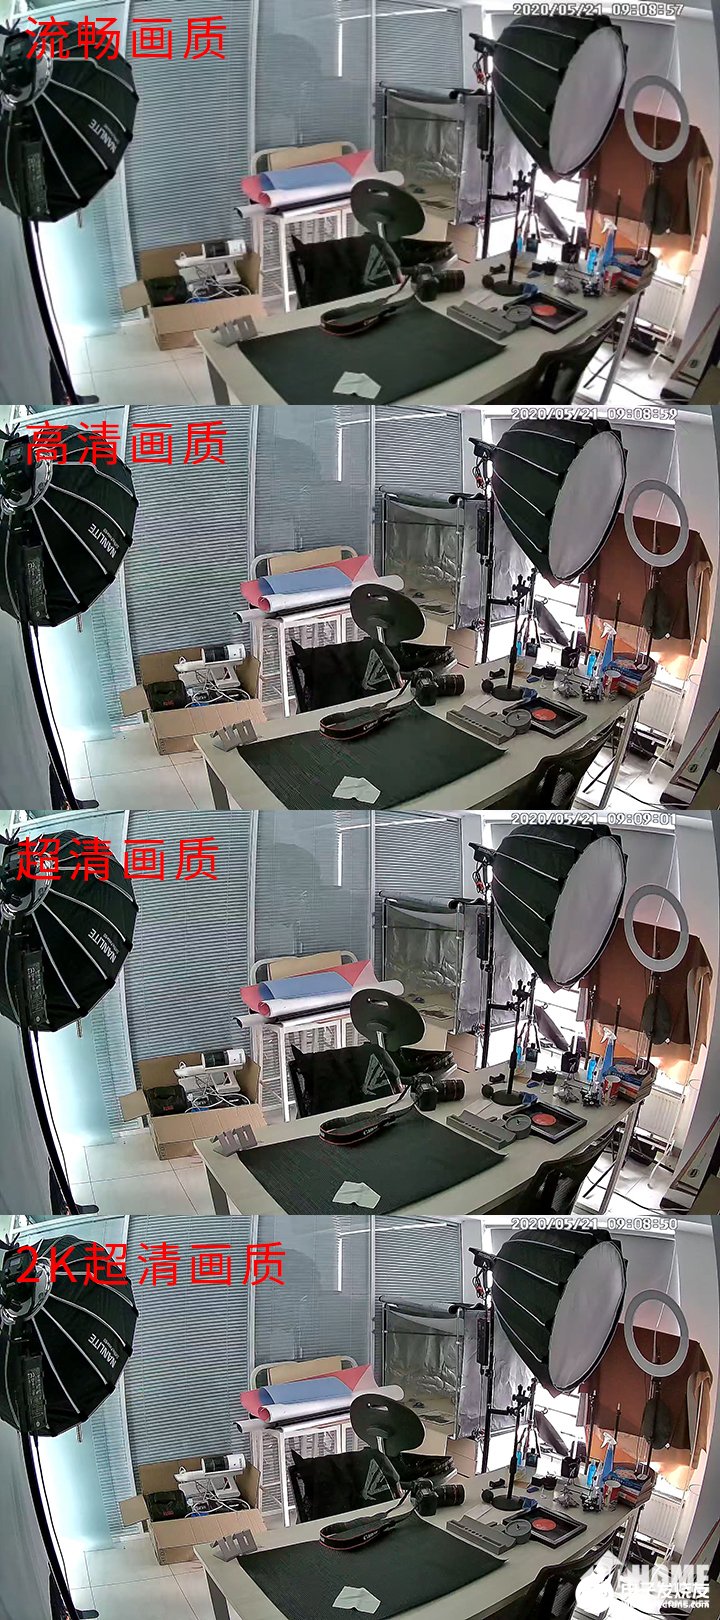 360智能摄像机红色警戒高配版为特定场景下的使用提供便利